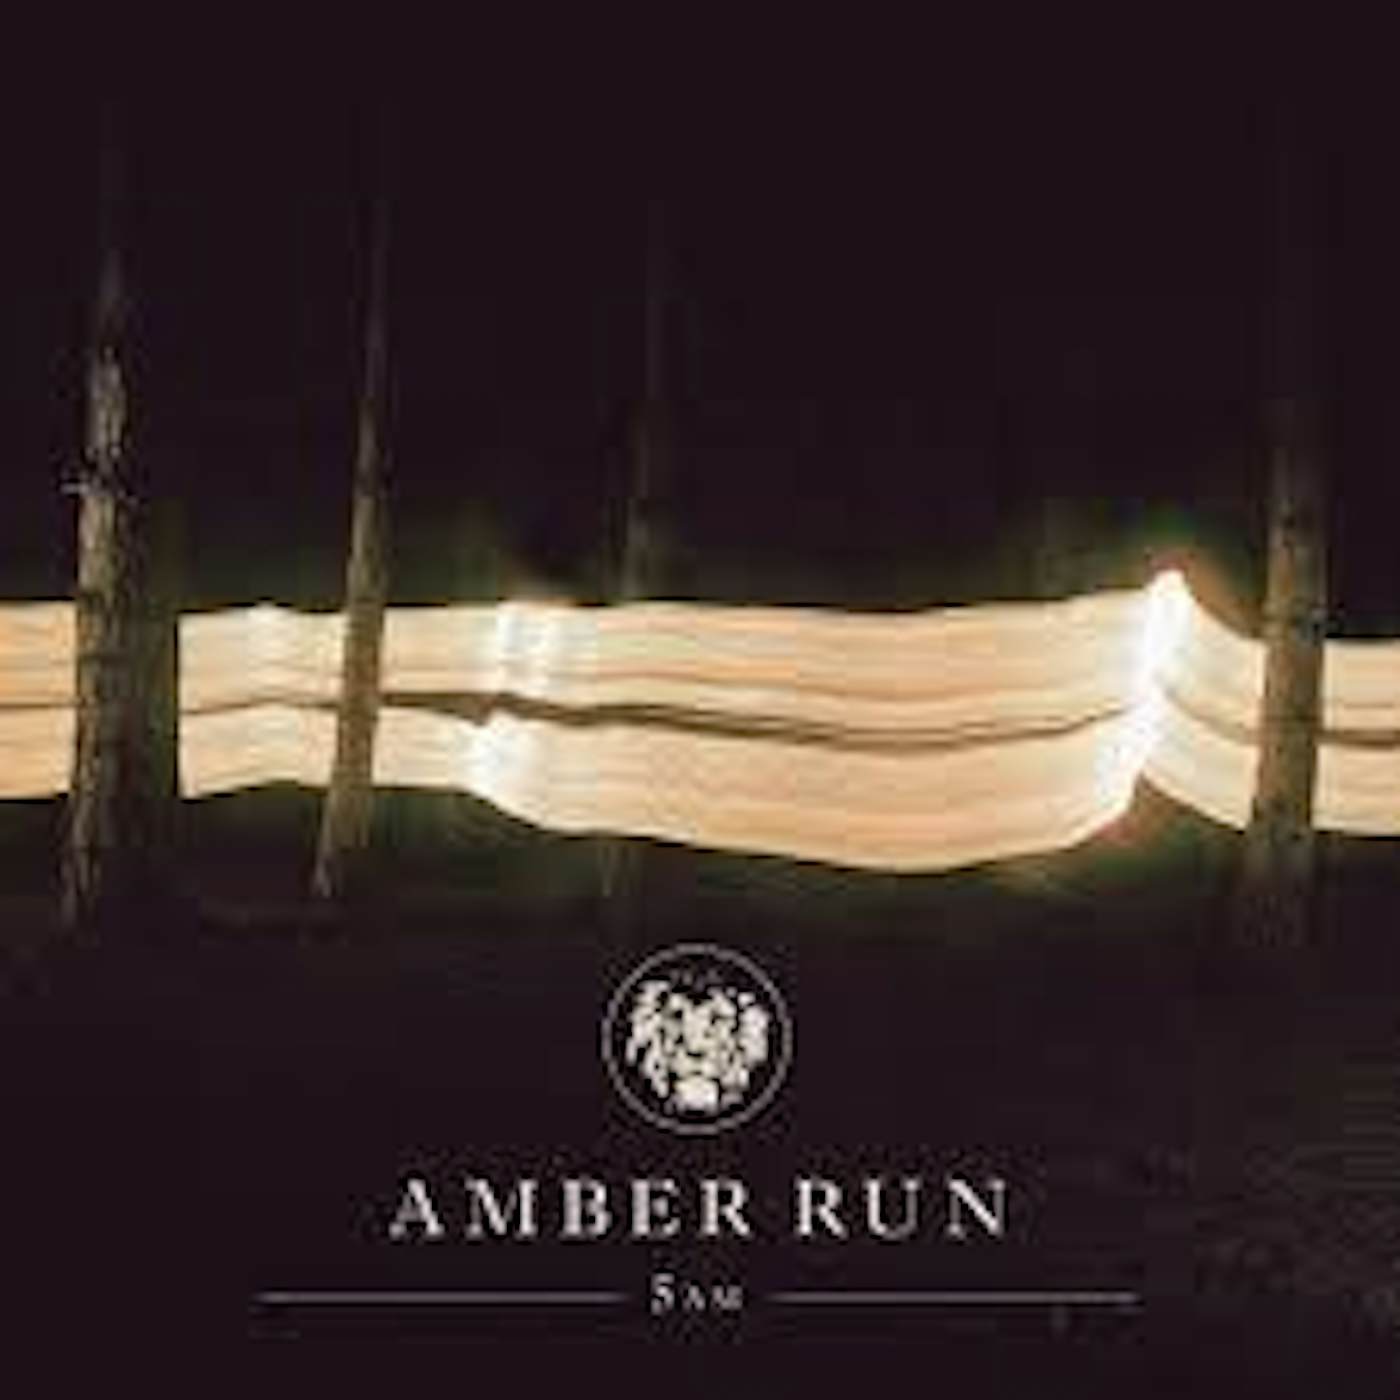 Amber Run 5AM CD